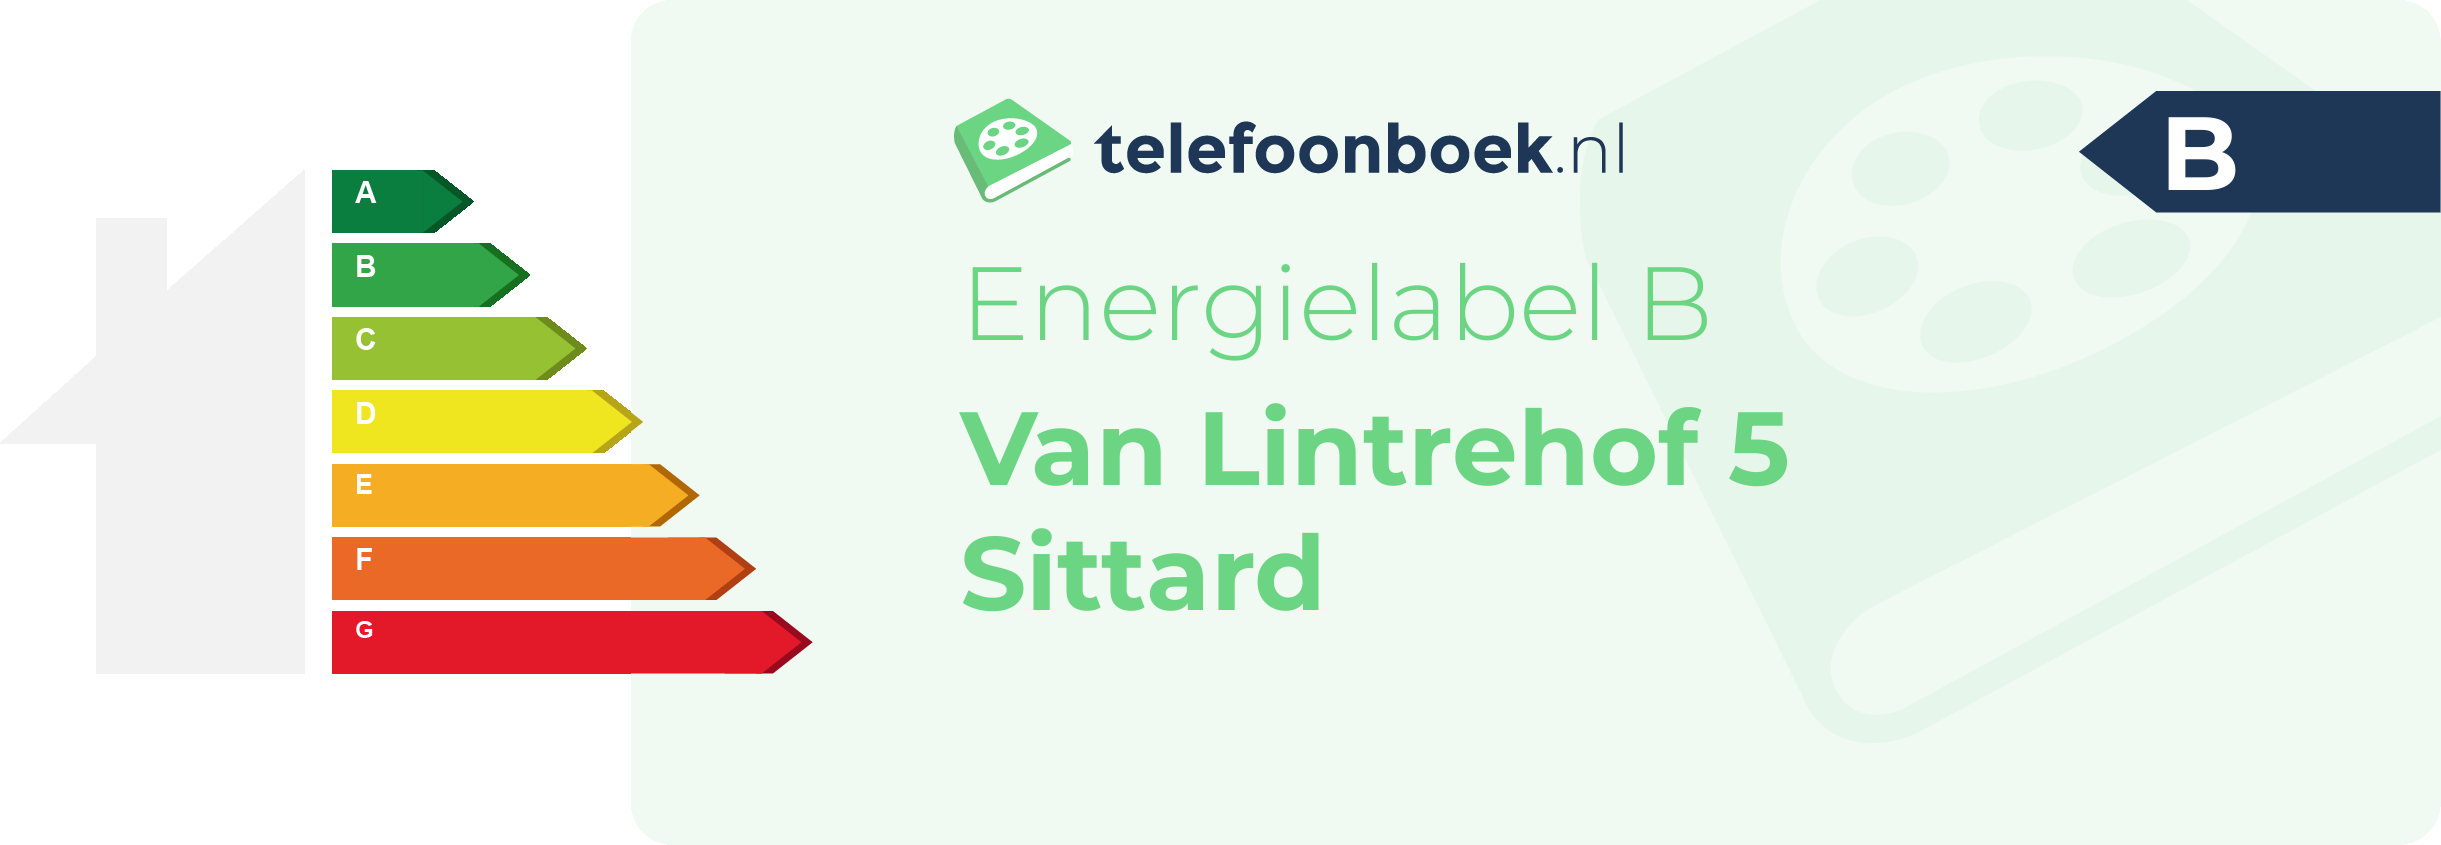 Energielabel Van Lintrehof 5 Sittard